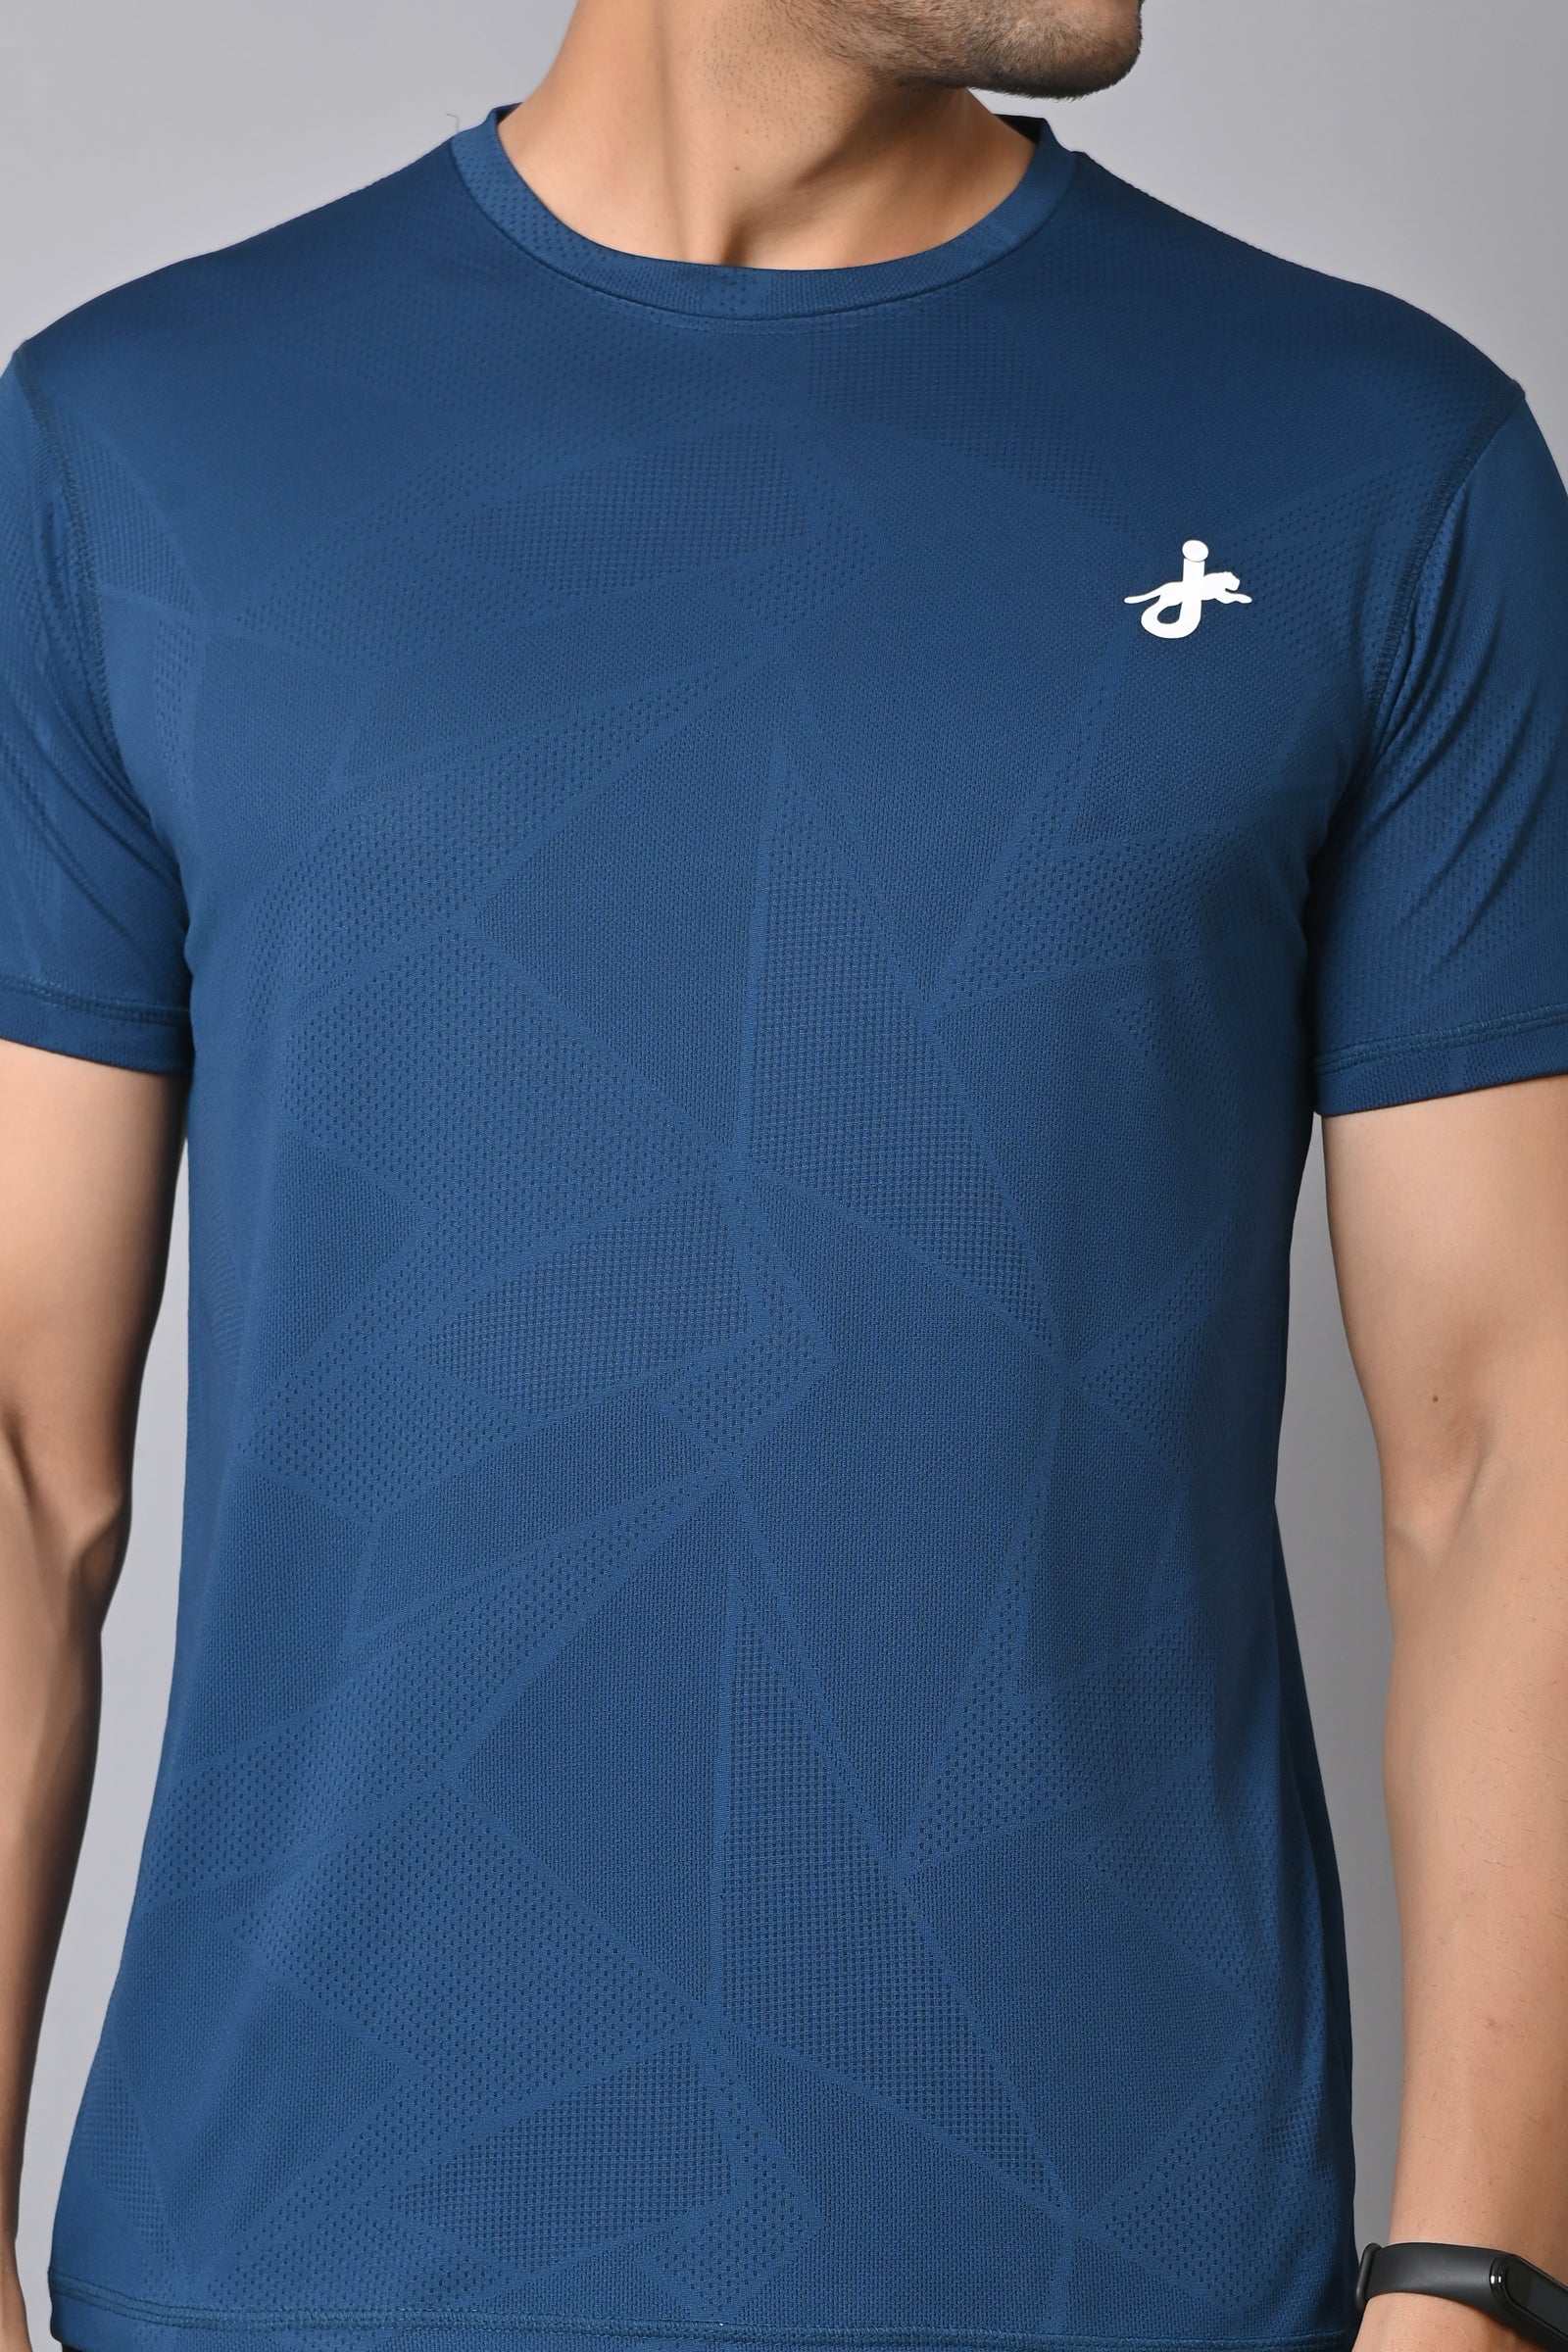 Jaguro Men's Sports T-Shirt Blue